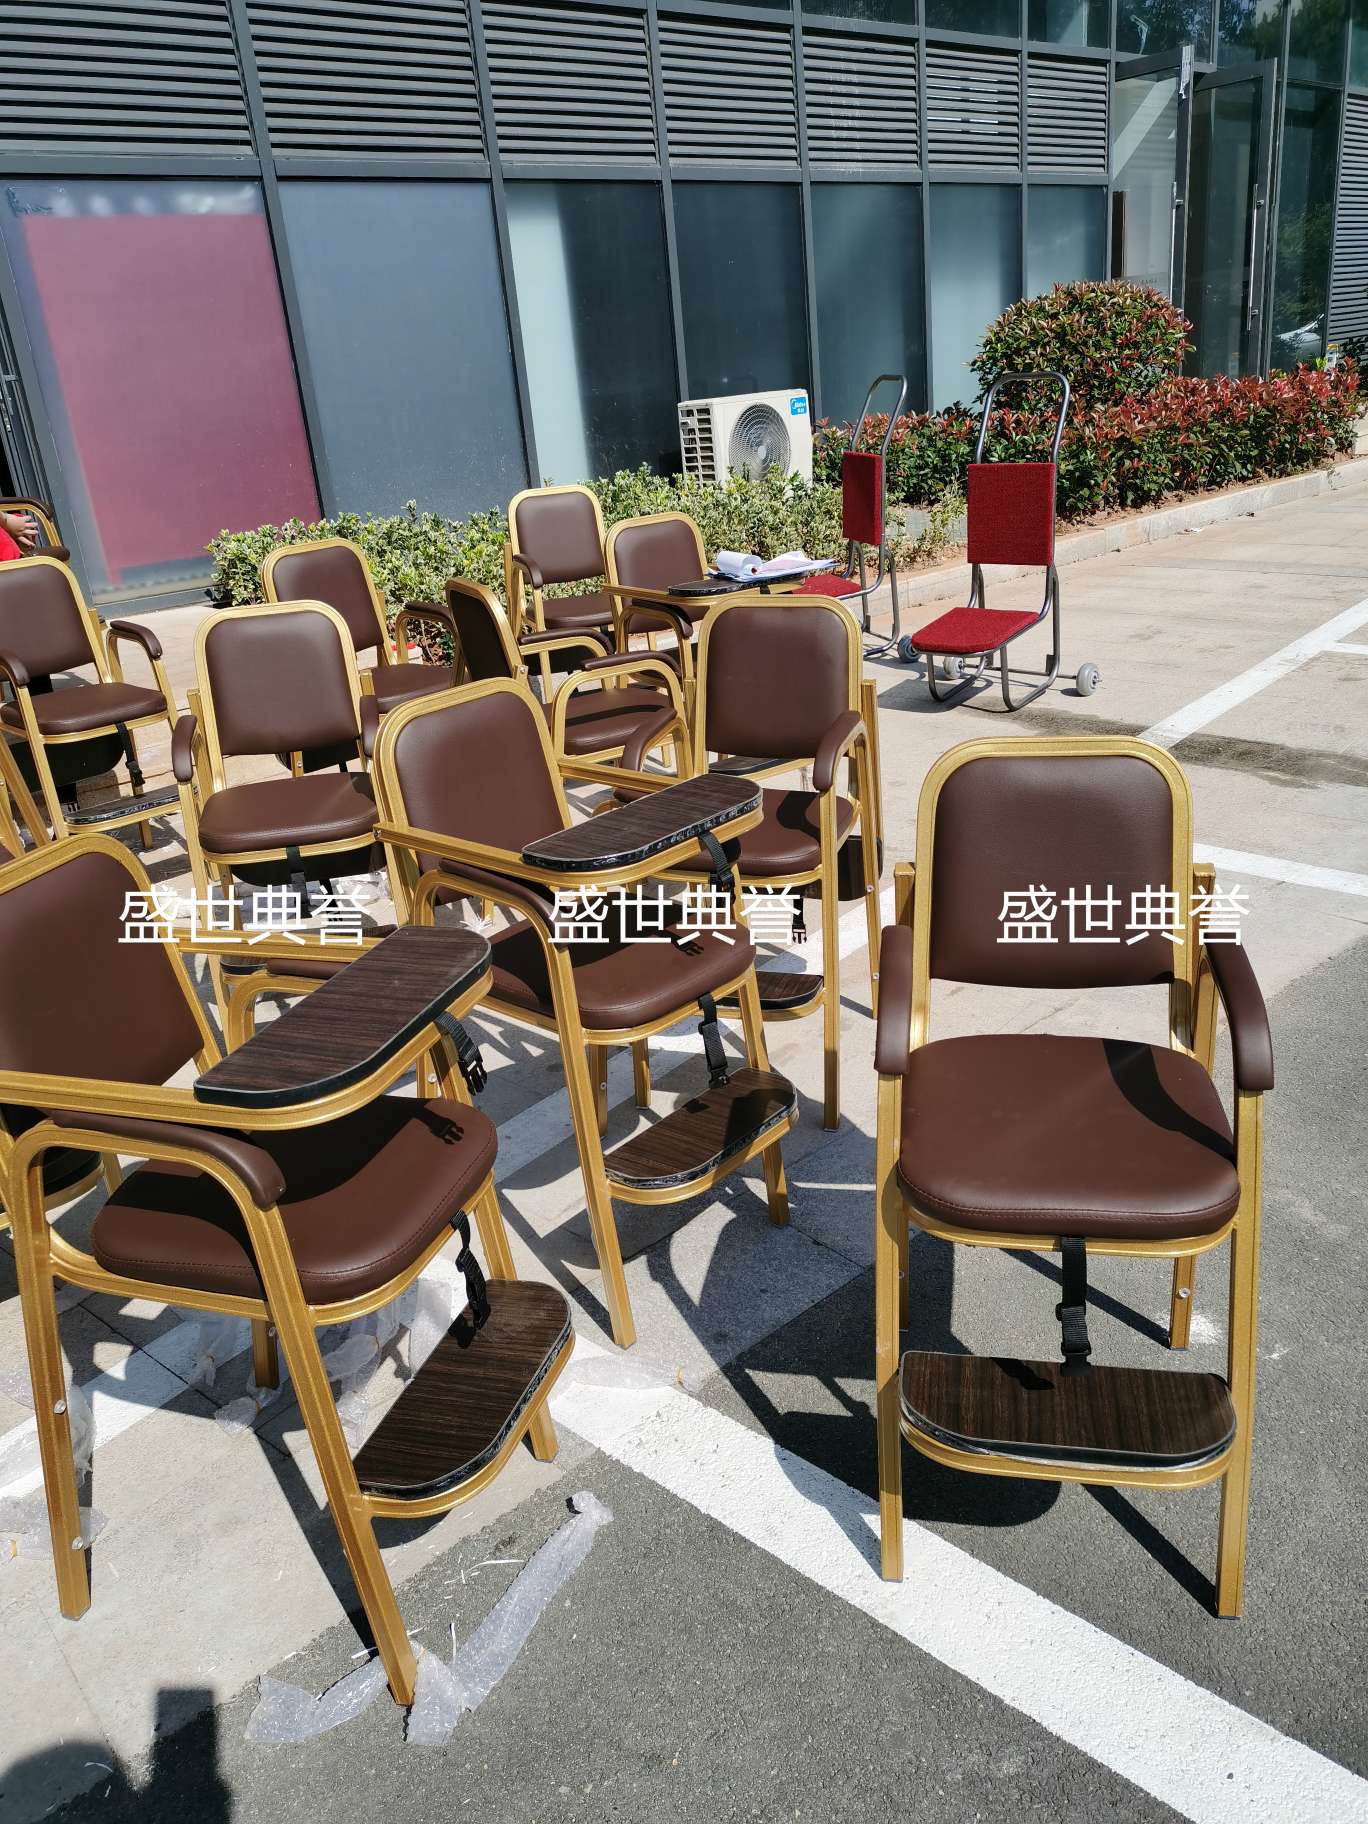 上海五星级酒店宴会厅宝宝餐椅饭店包厢儿童就餐椅子铝合金宝宝椅详情图12